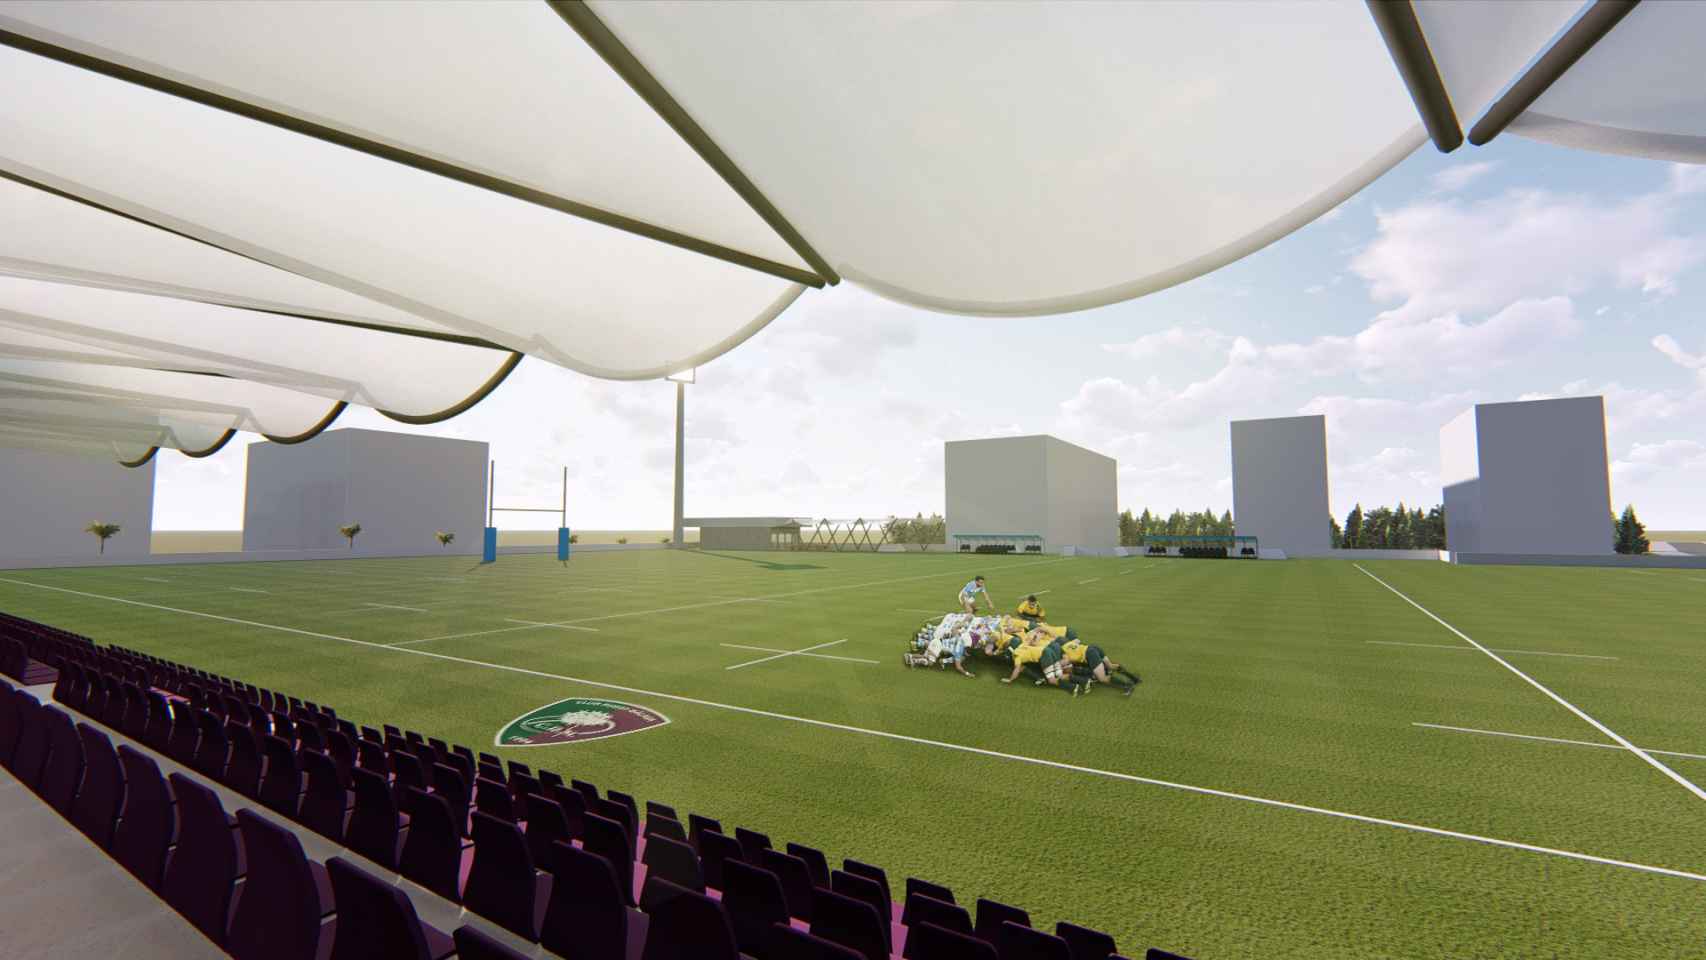 Imagen del campo de rugby previsto en el complejo deportivo.